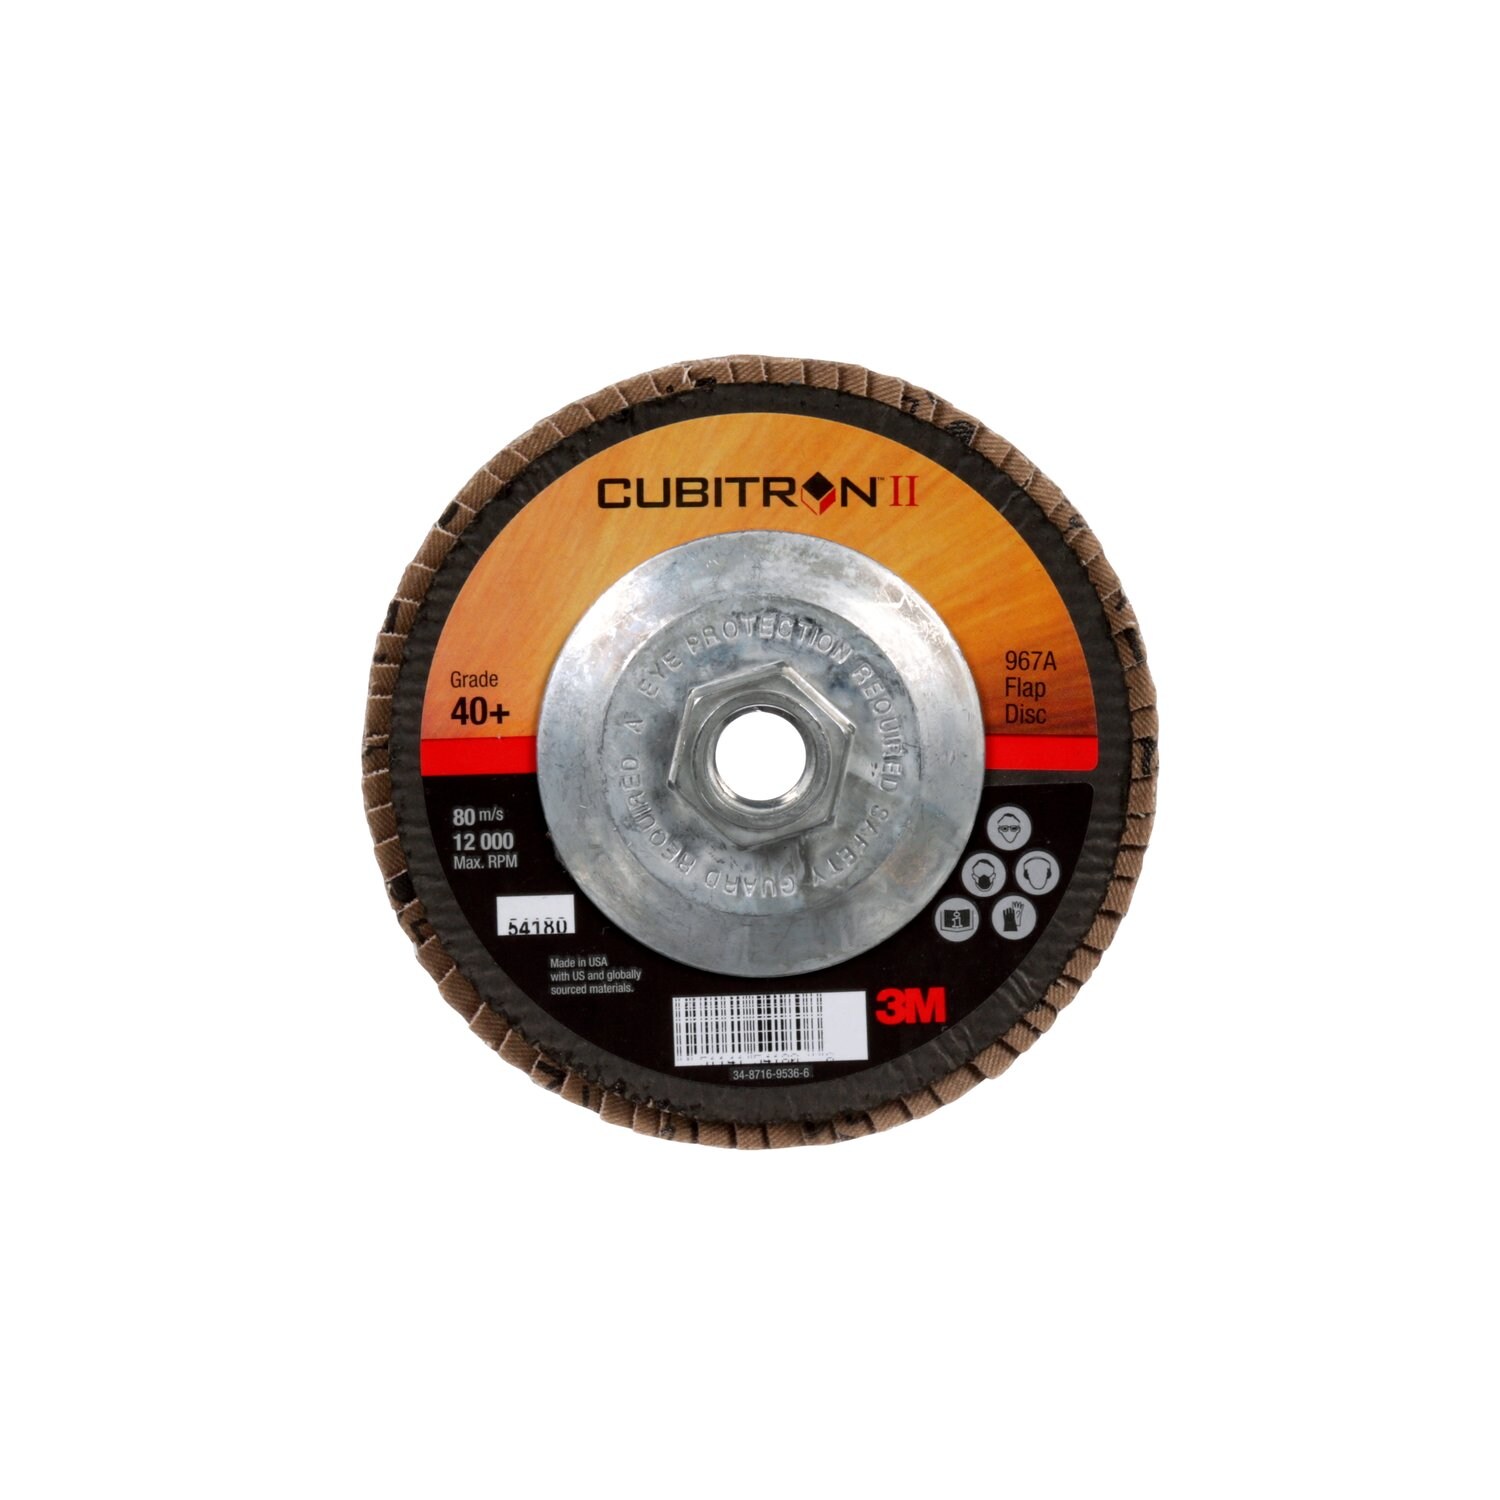 7100049327 - 3M Cubitron II Flap Disc 967A, 40+, T29 Quick Change, 5 in x 5/8"-11,
10 ea/Case